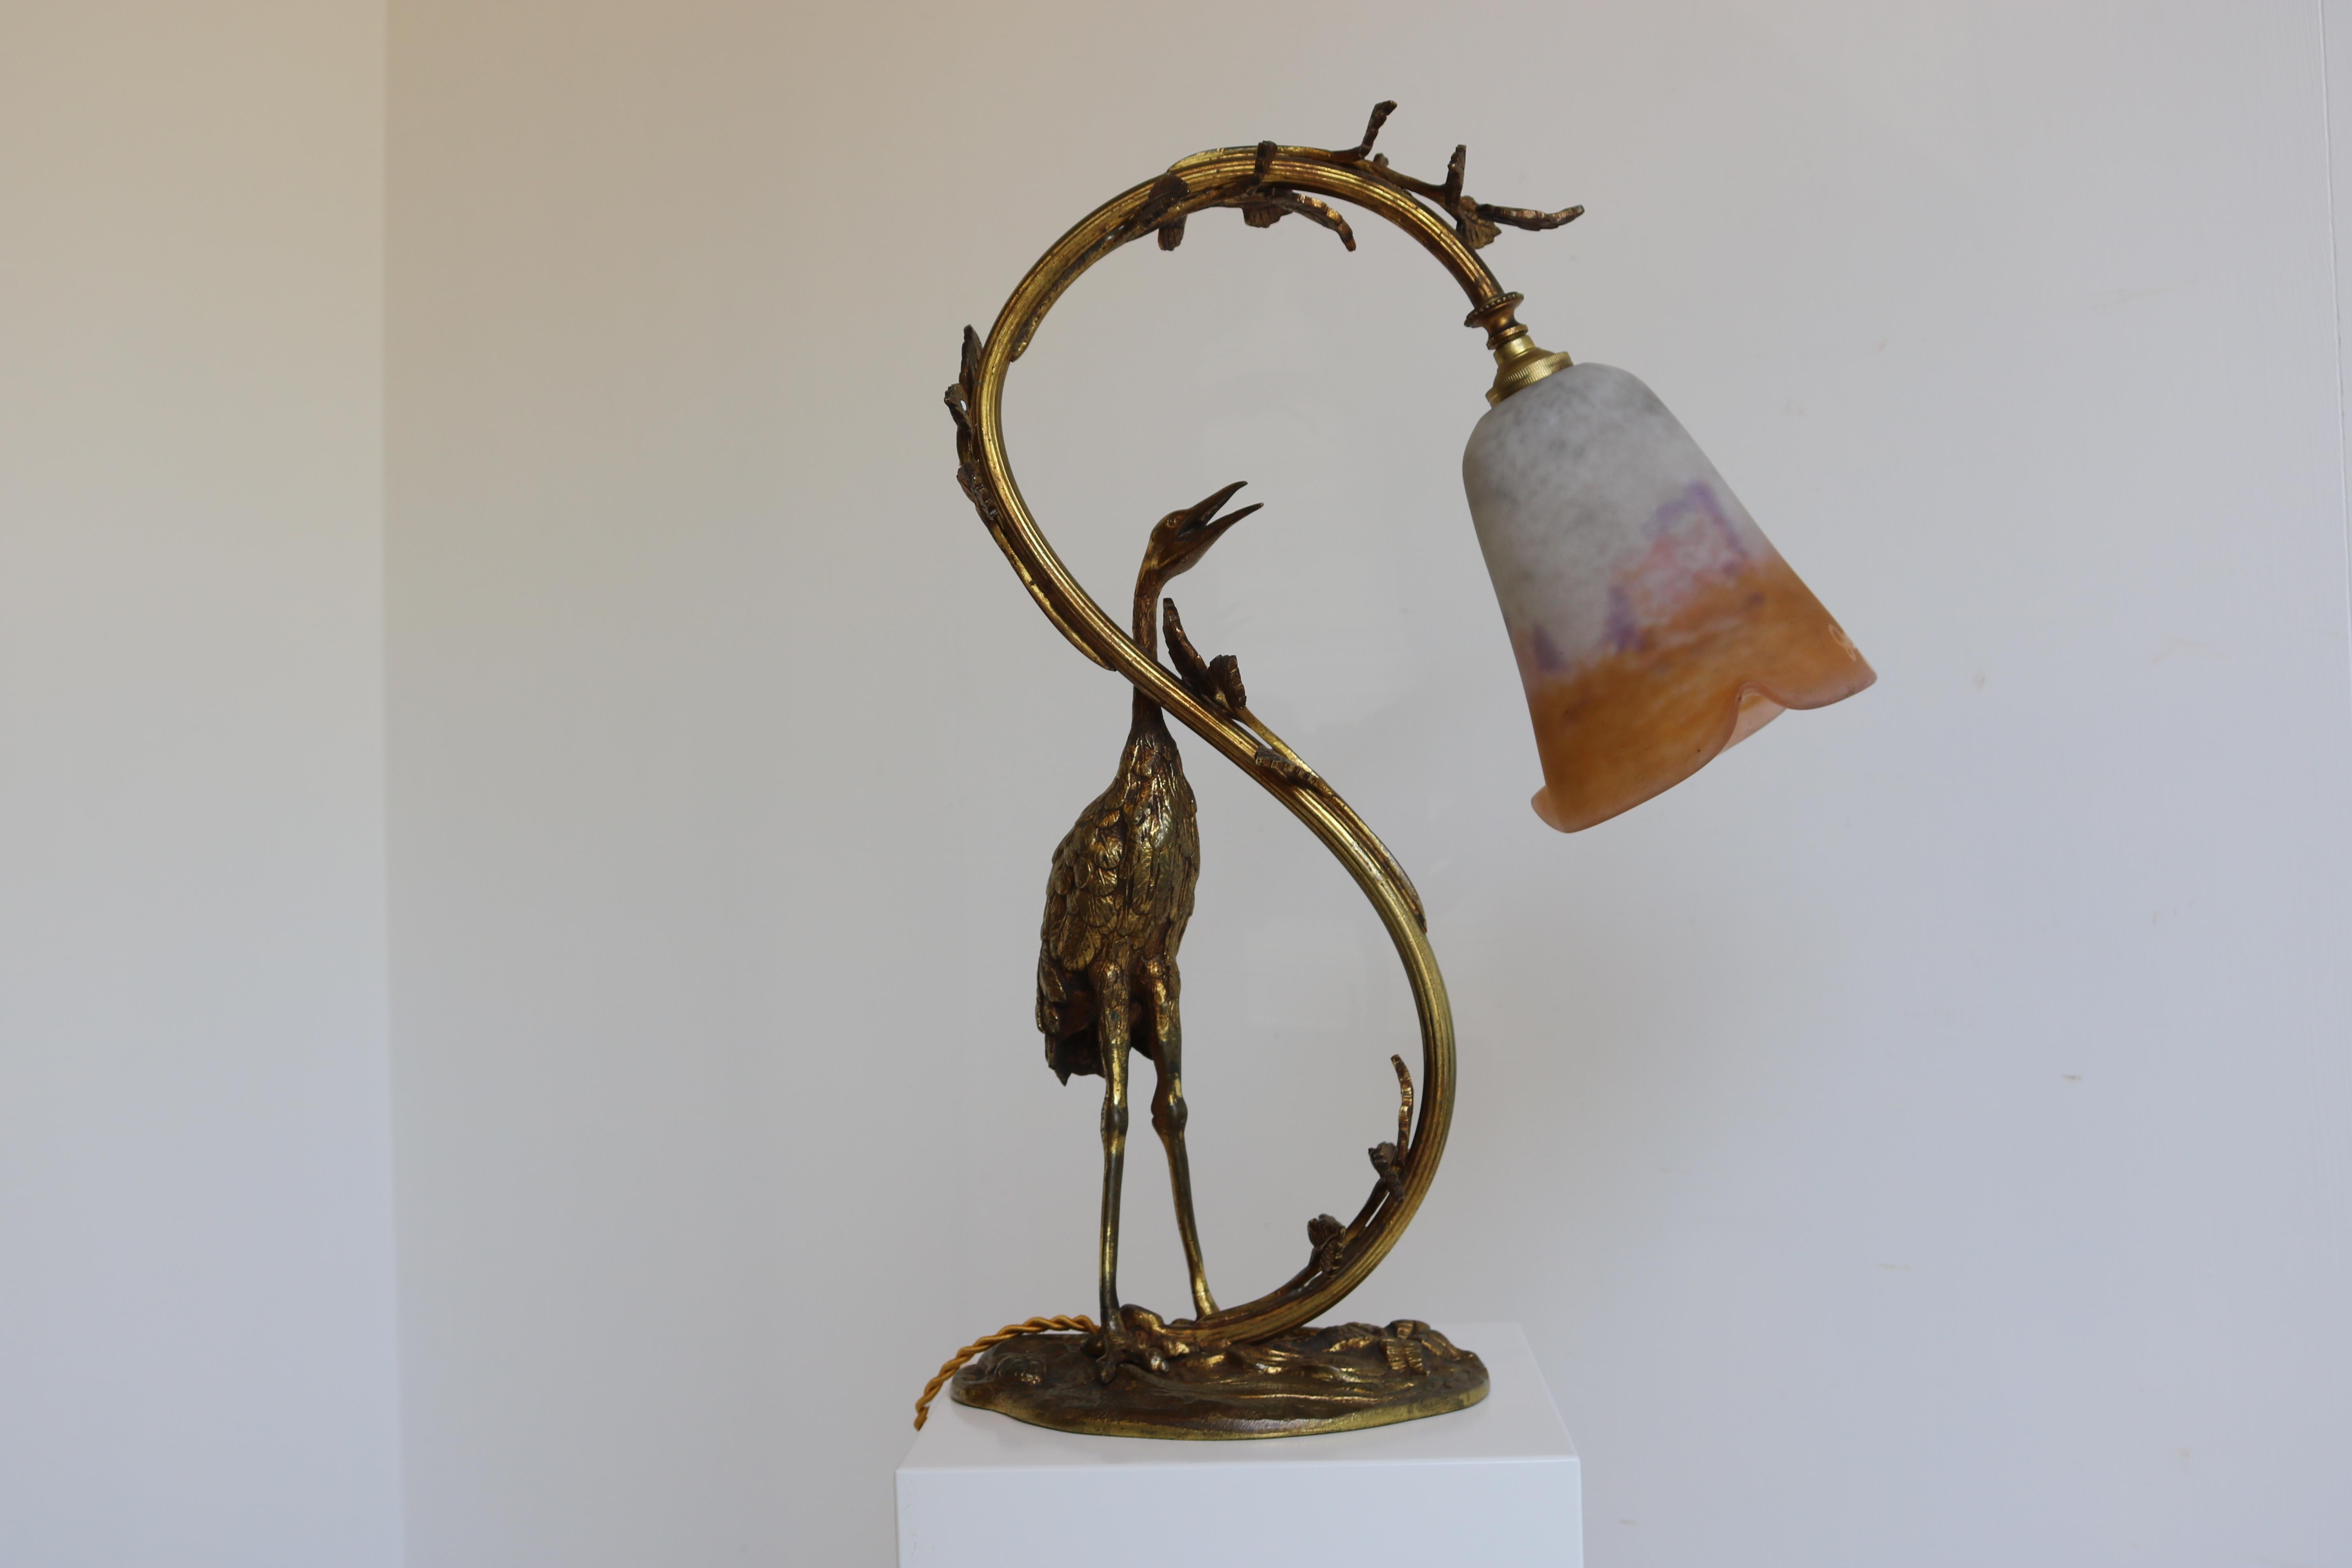 Antique French Art Nouveau Table Lamp Heron by Degue 1920 Pate De Verre Bronze  For Sale 3